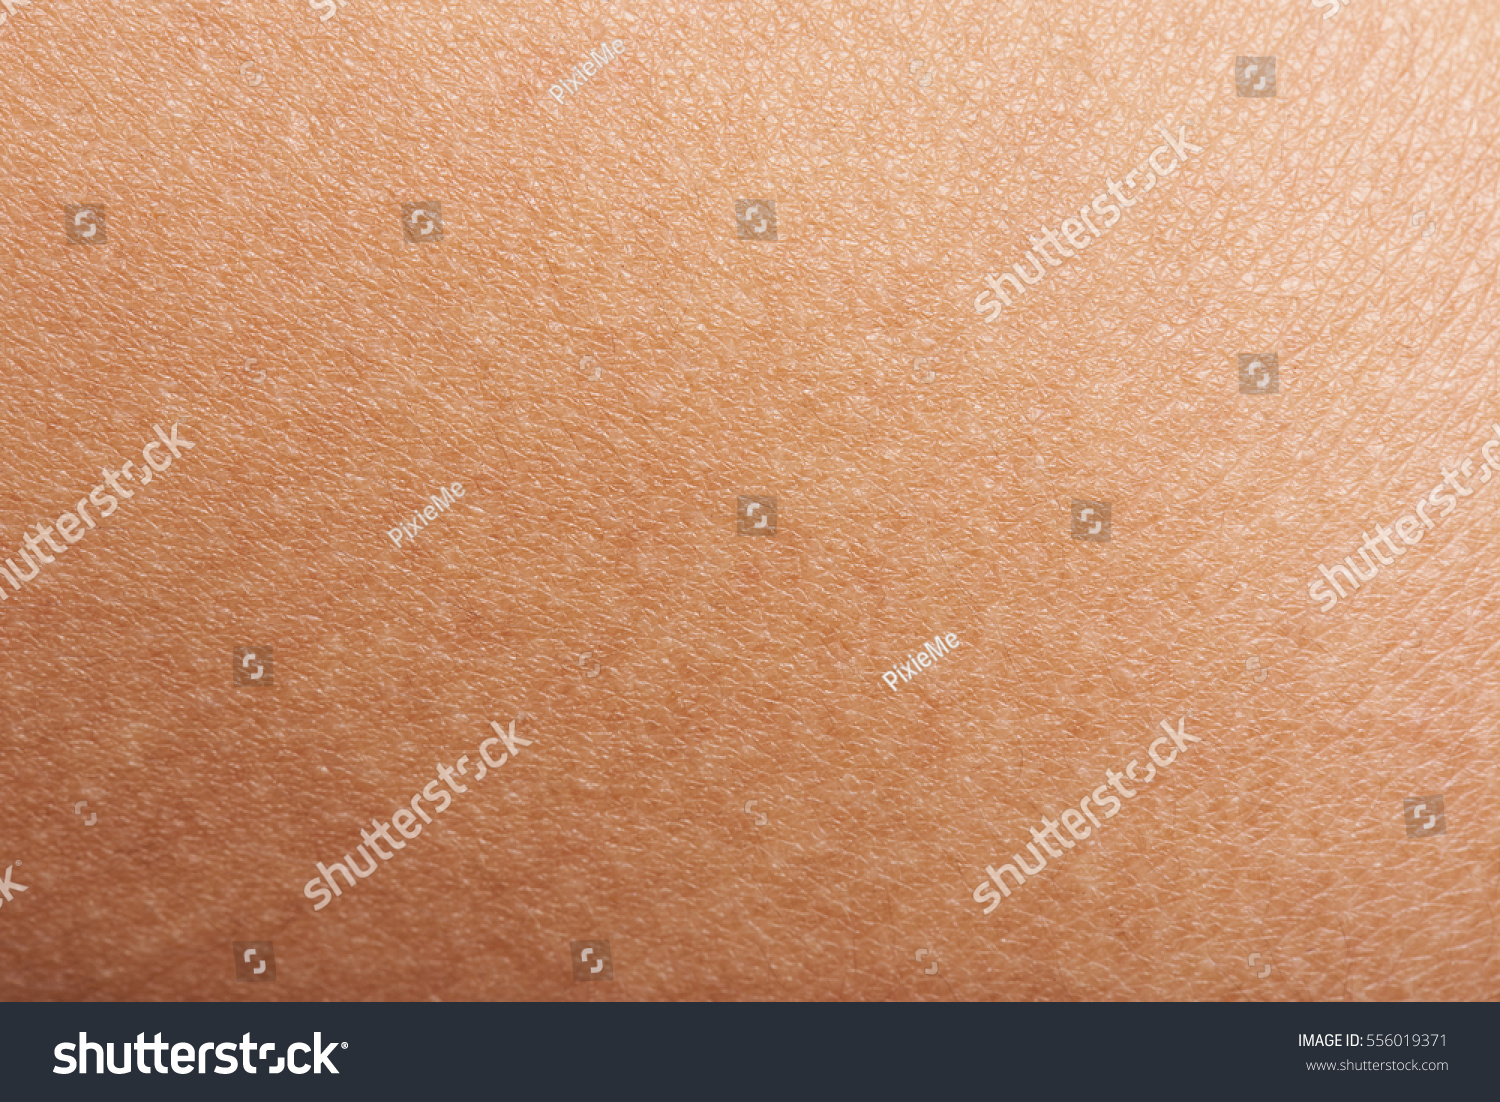 Dark skin of woman hand macro. Human skin texture background #556019371